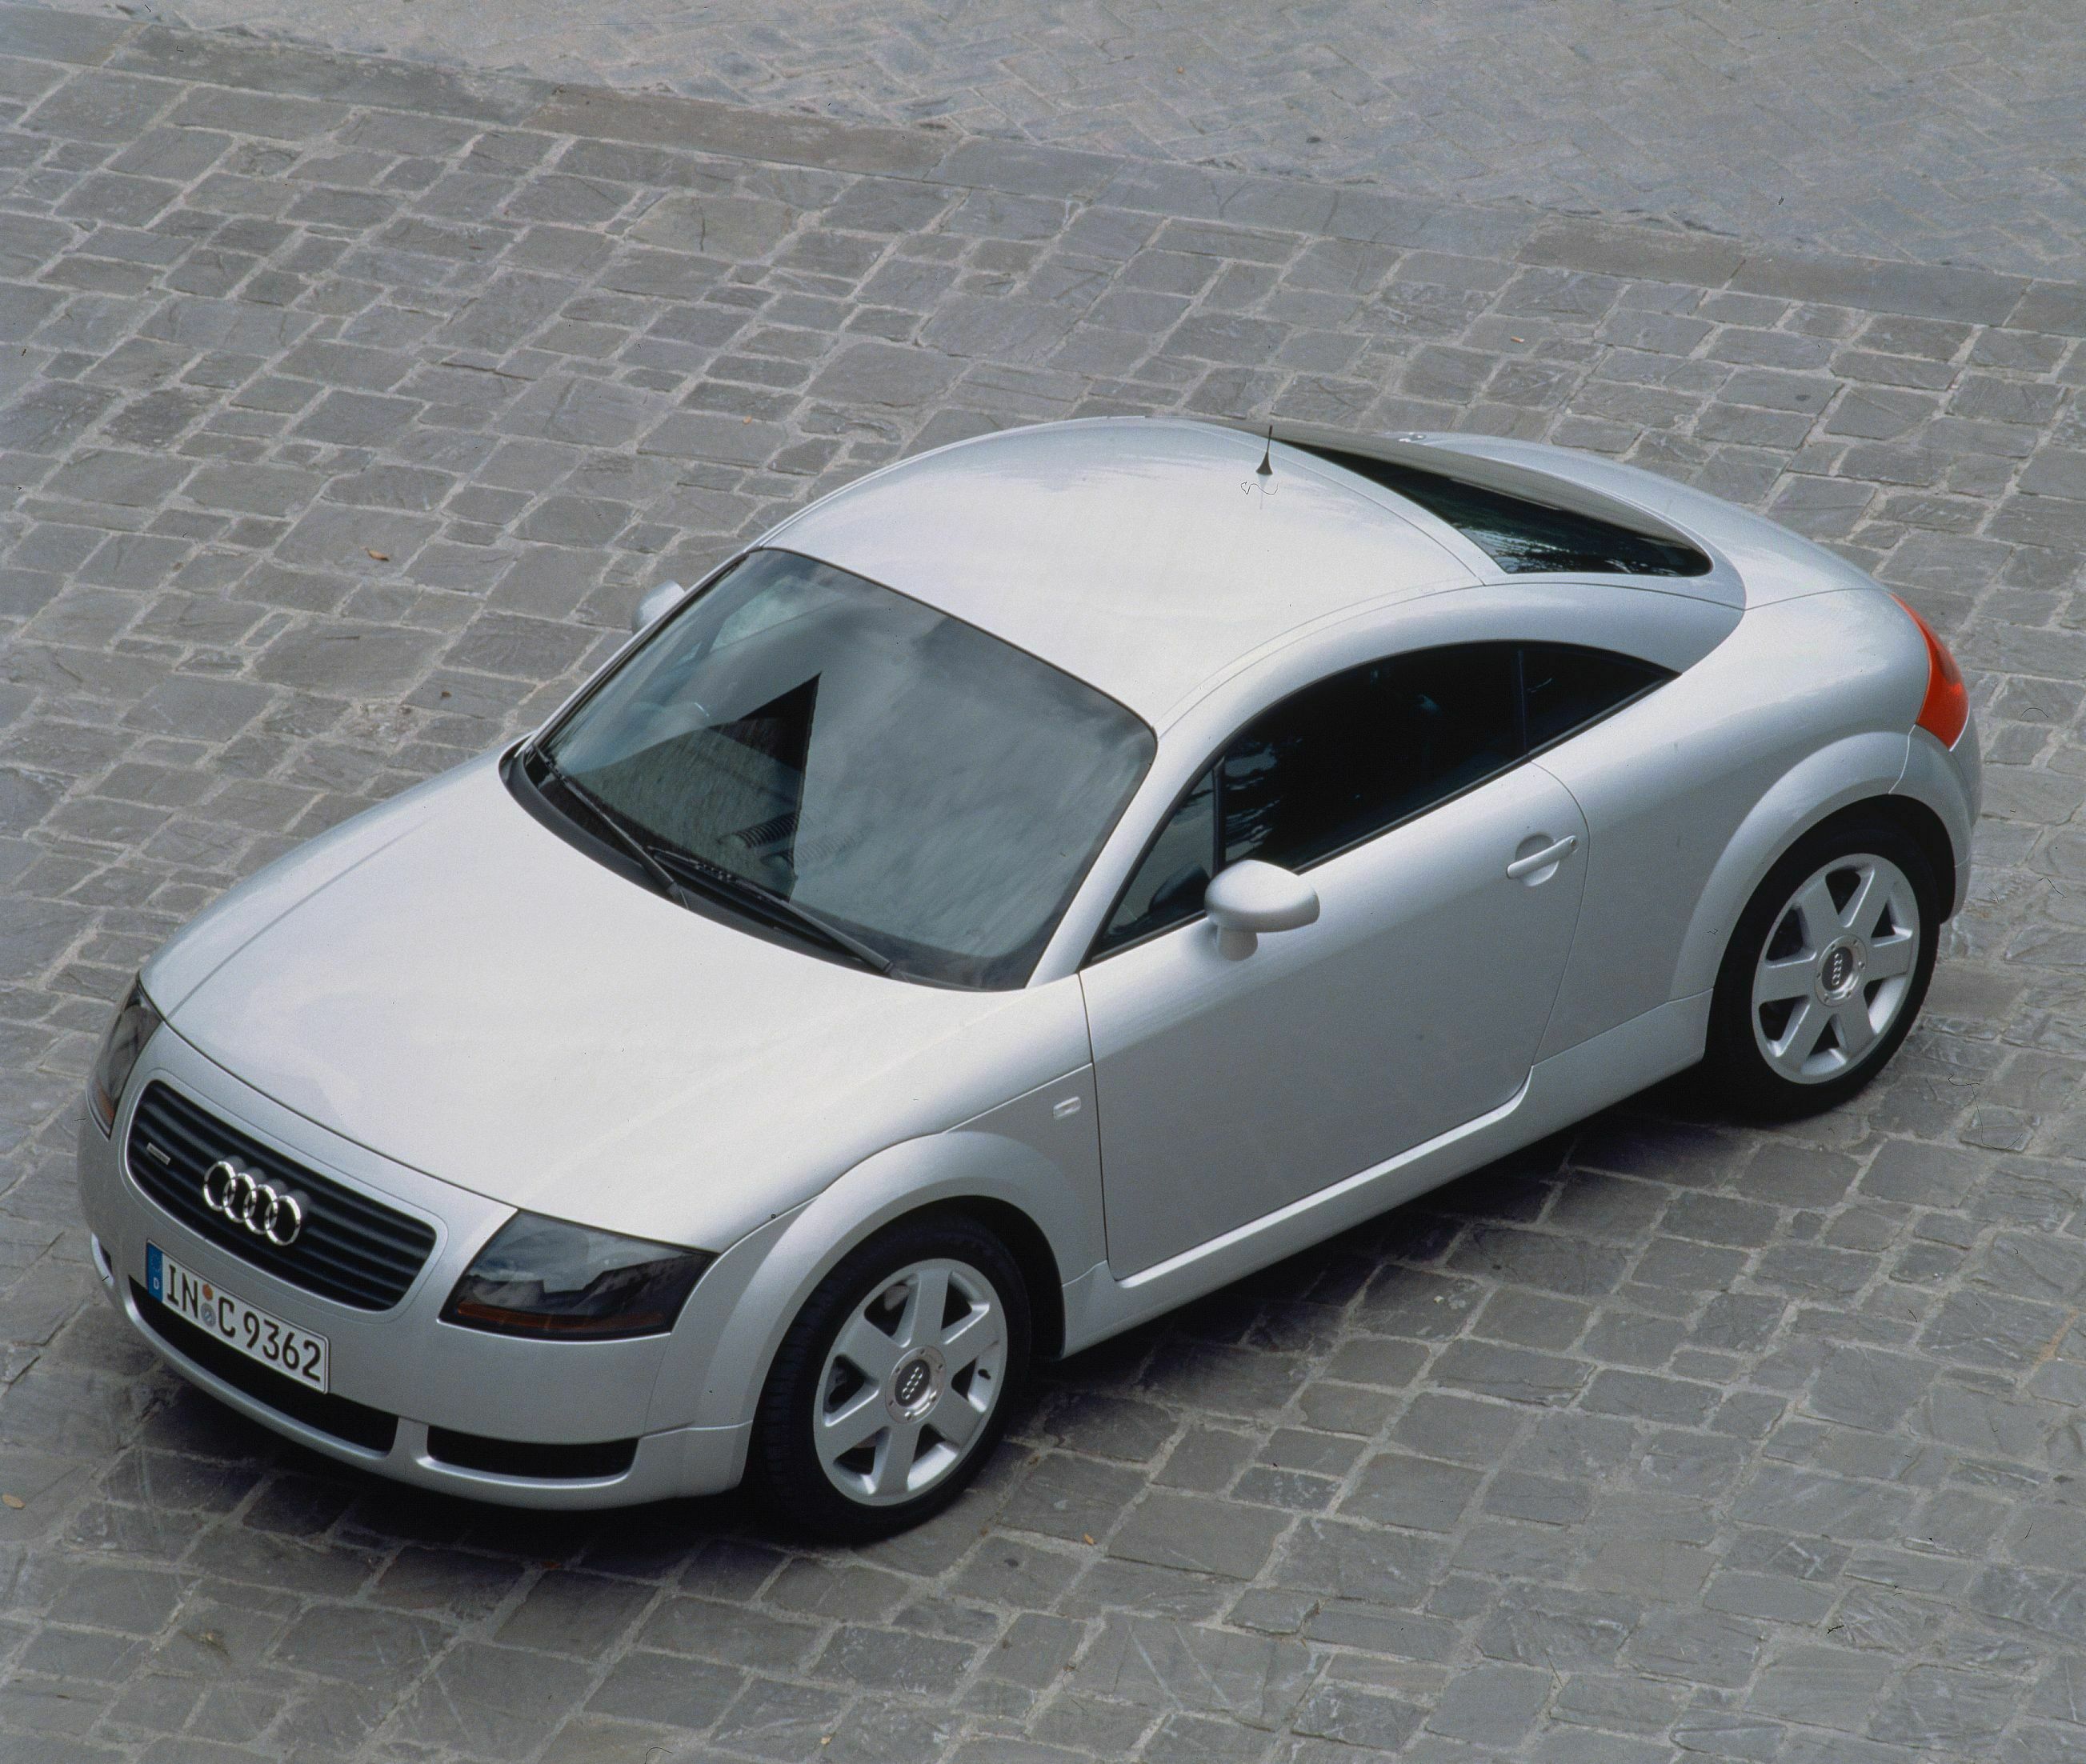 Zeitlose Designikone: Der Audi TT wird 25 Jahre